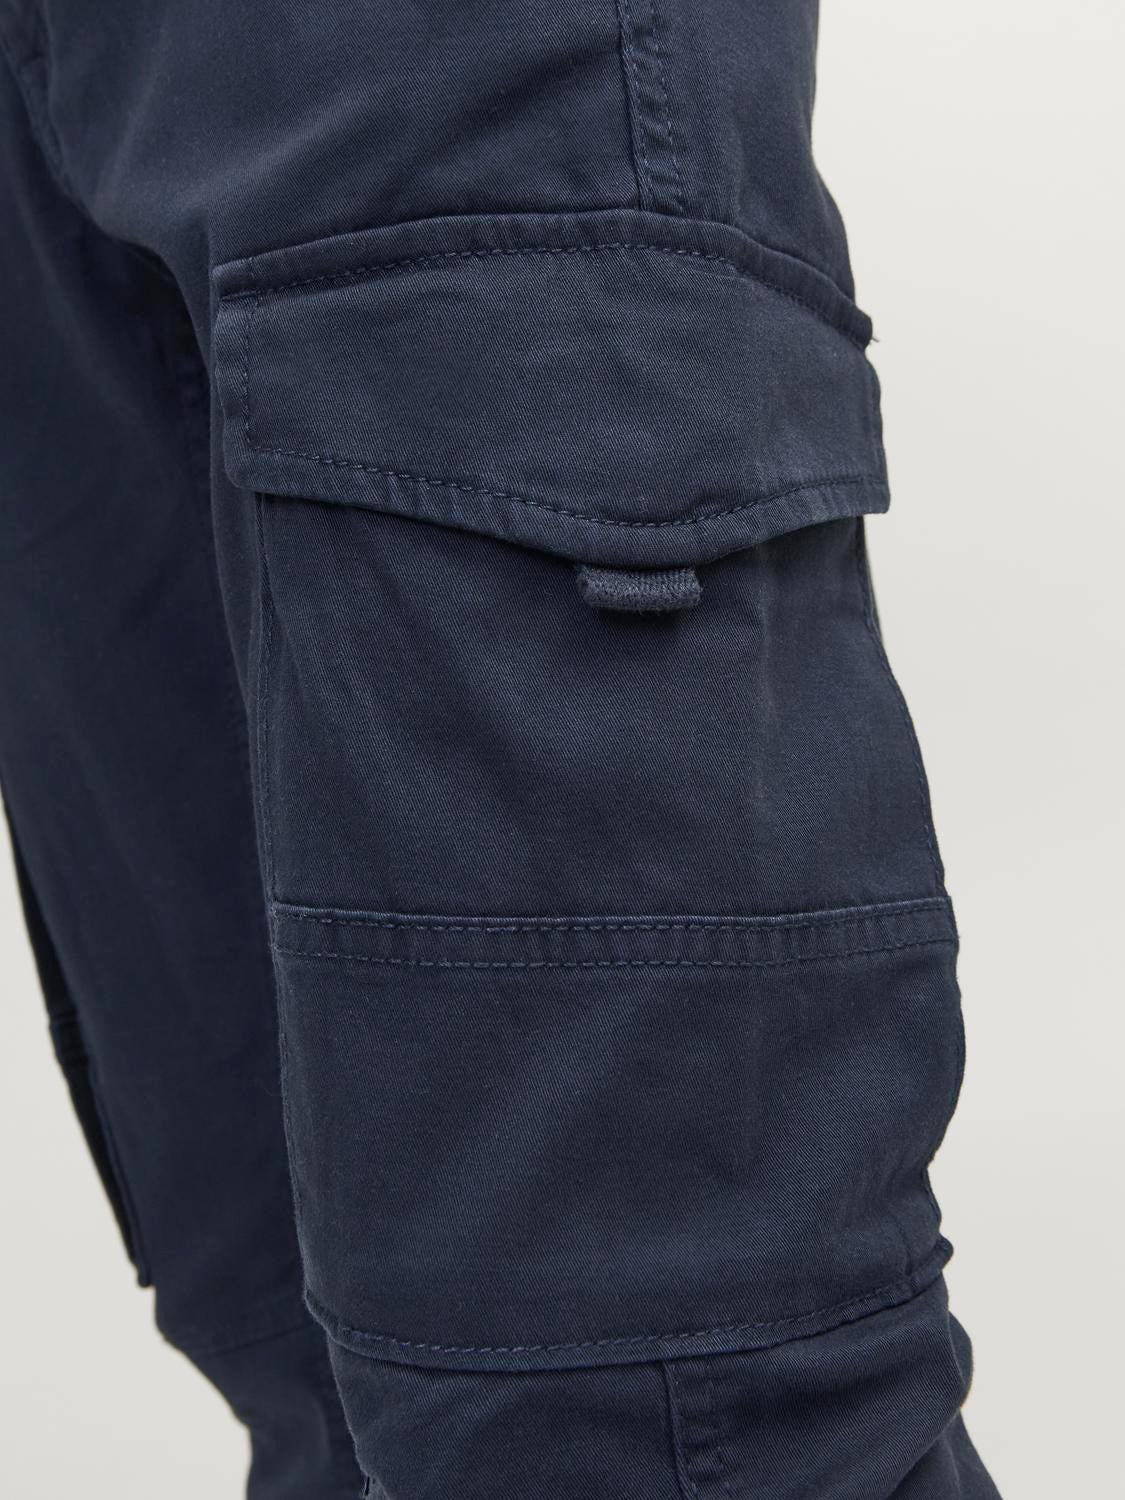 Fila men cargo pants navy blue  Brands For Less